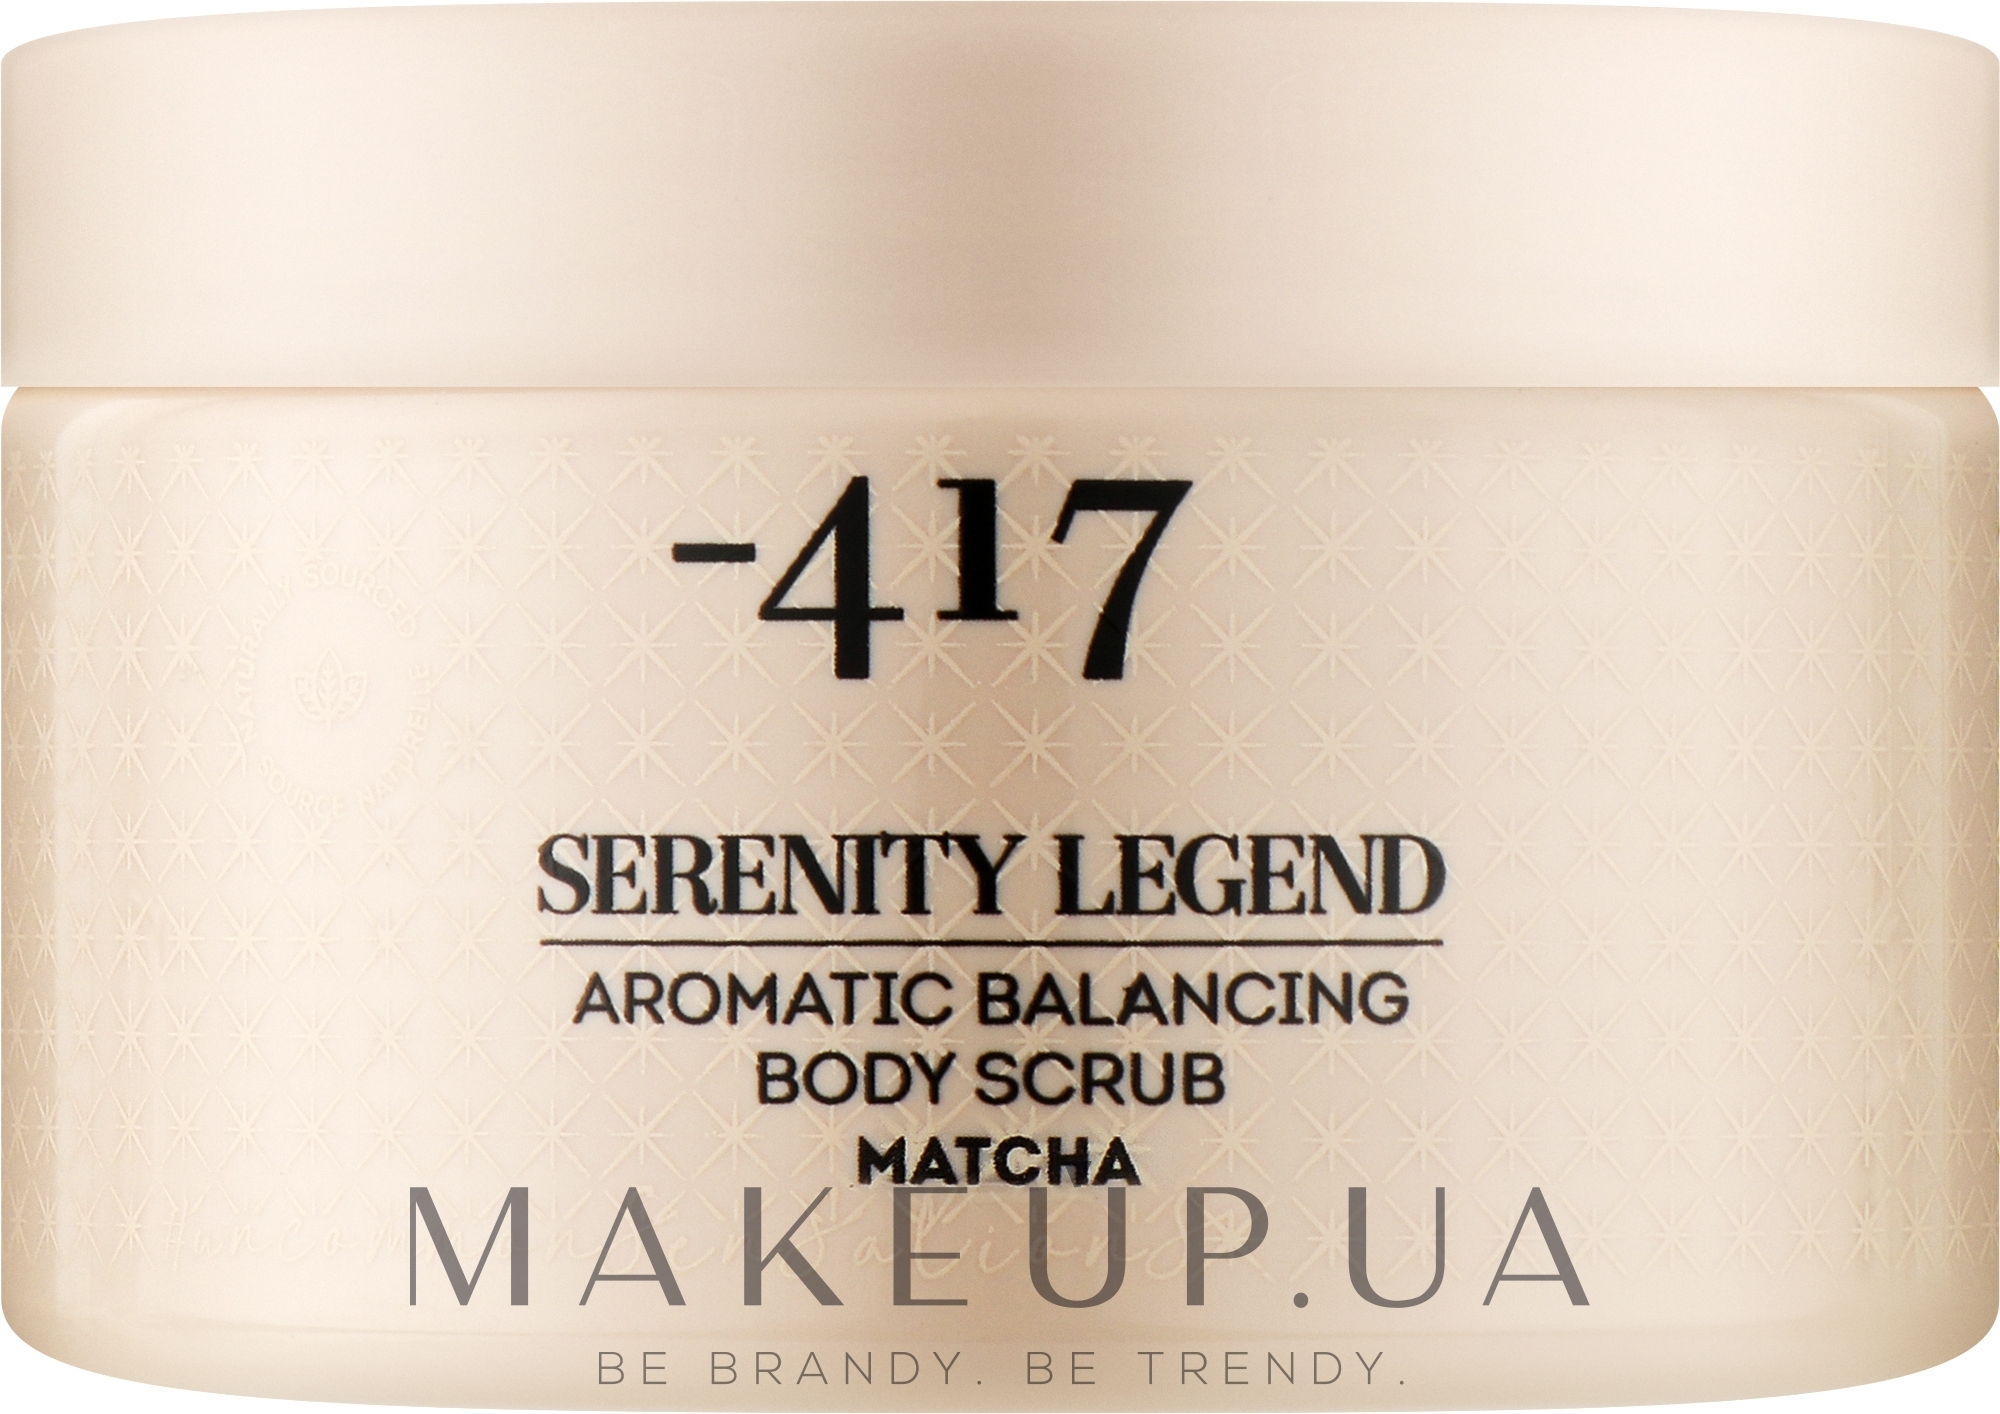 Скраб ароматичний для покращення балансу шкіри тіла "Матча" - - 417 Serenity Legend Aromatic Balancing Body Scrub Matcha — фото 400g